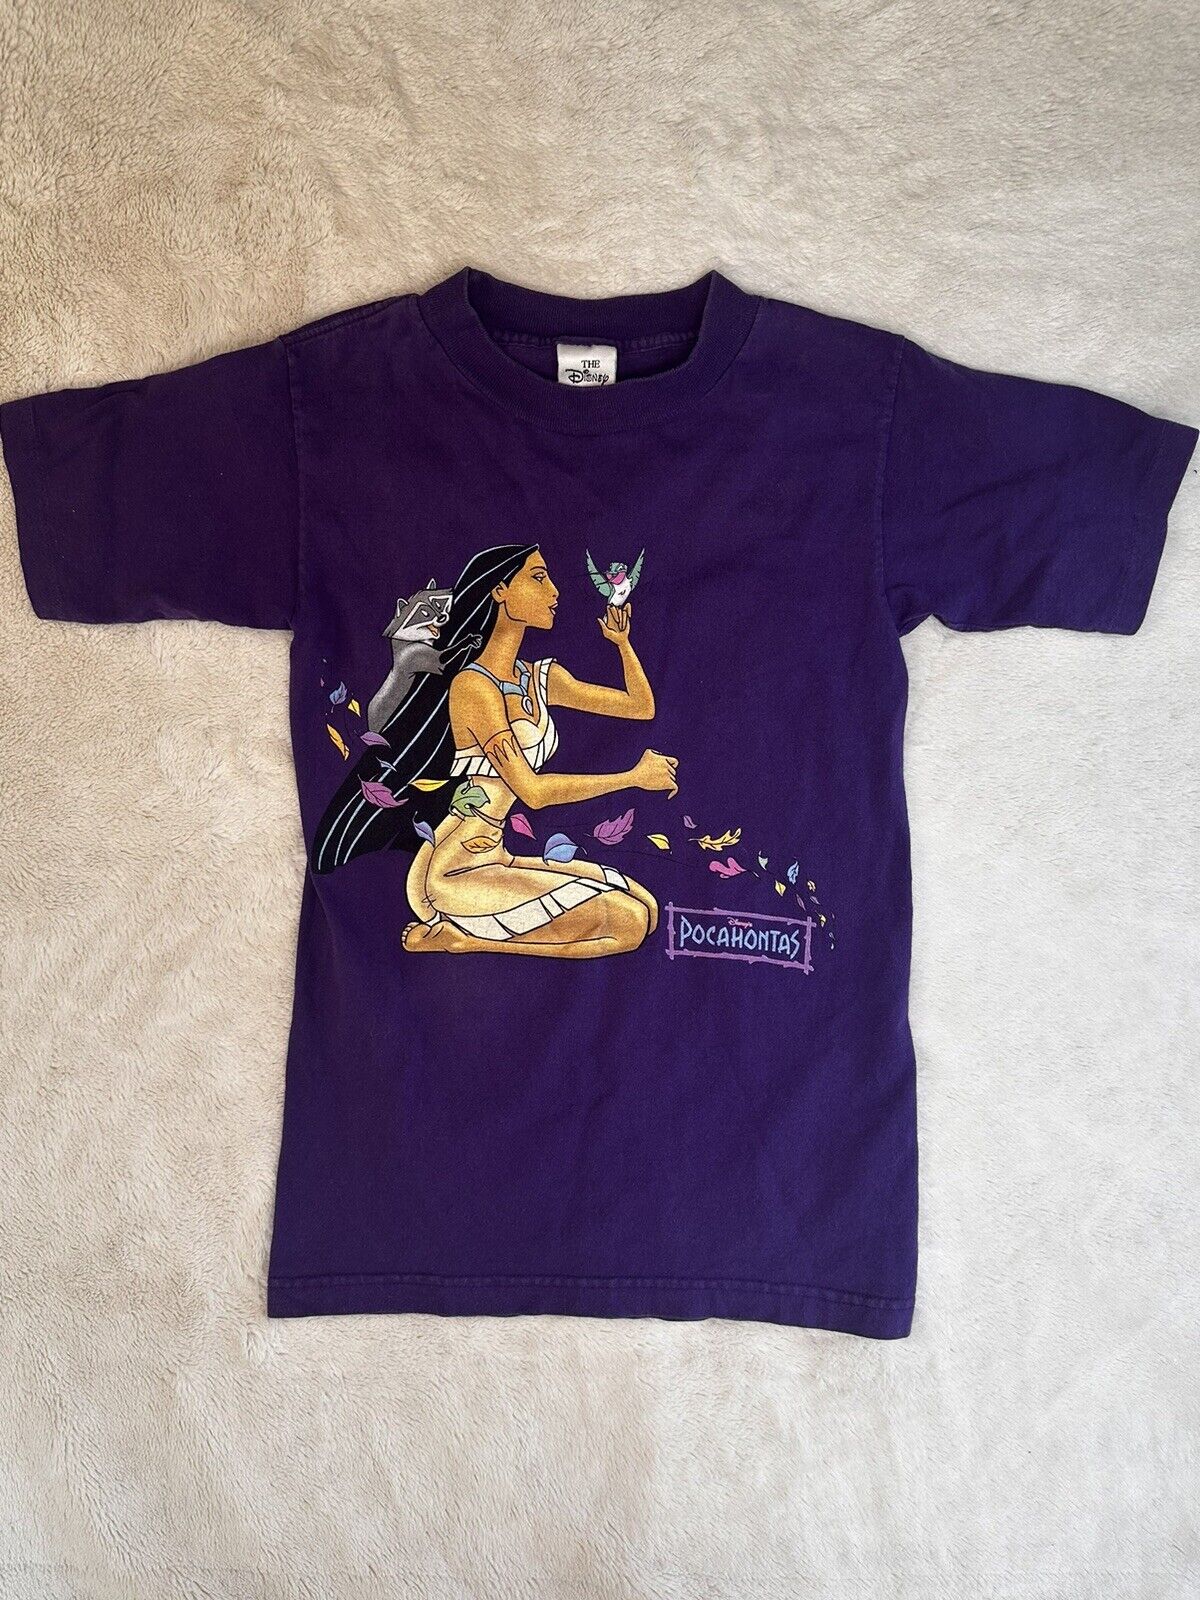 Vintage The Disney Store Purple Pocahontas Crew Neck T-Shirt Unisex Youth Size L